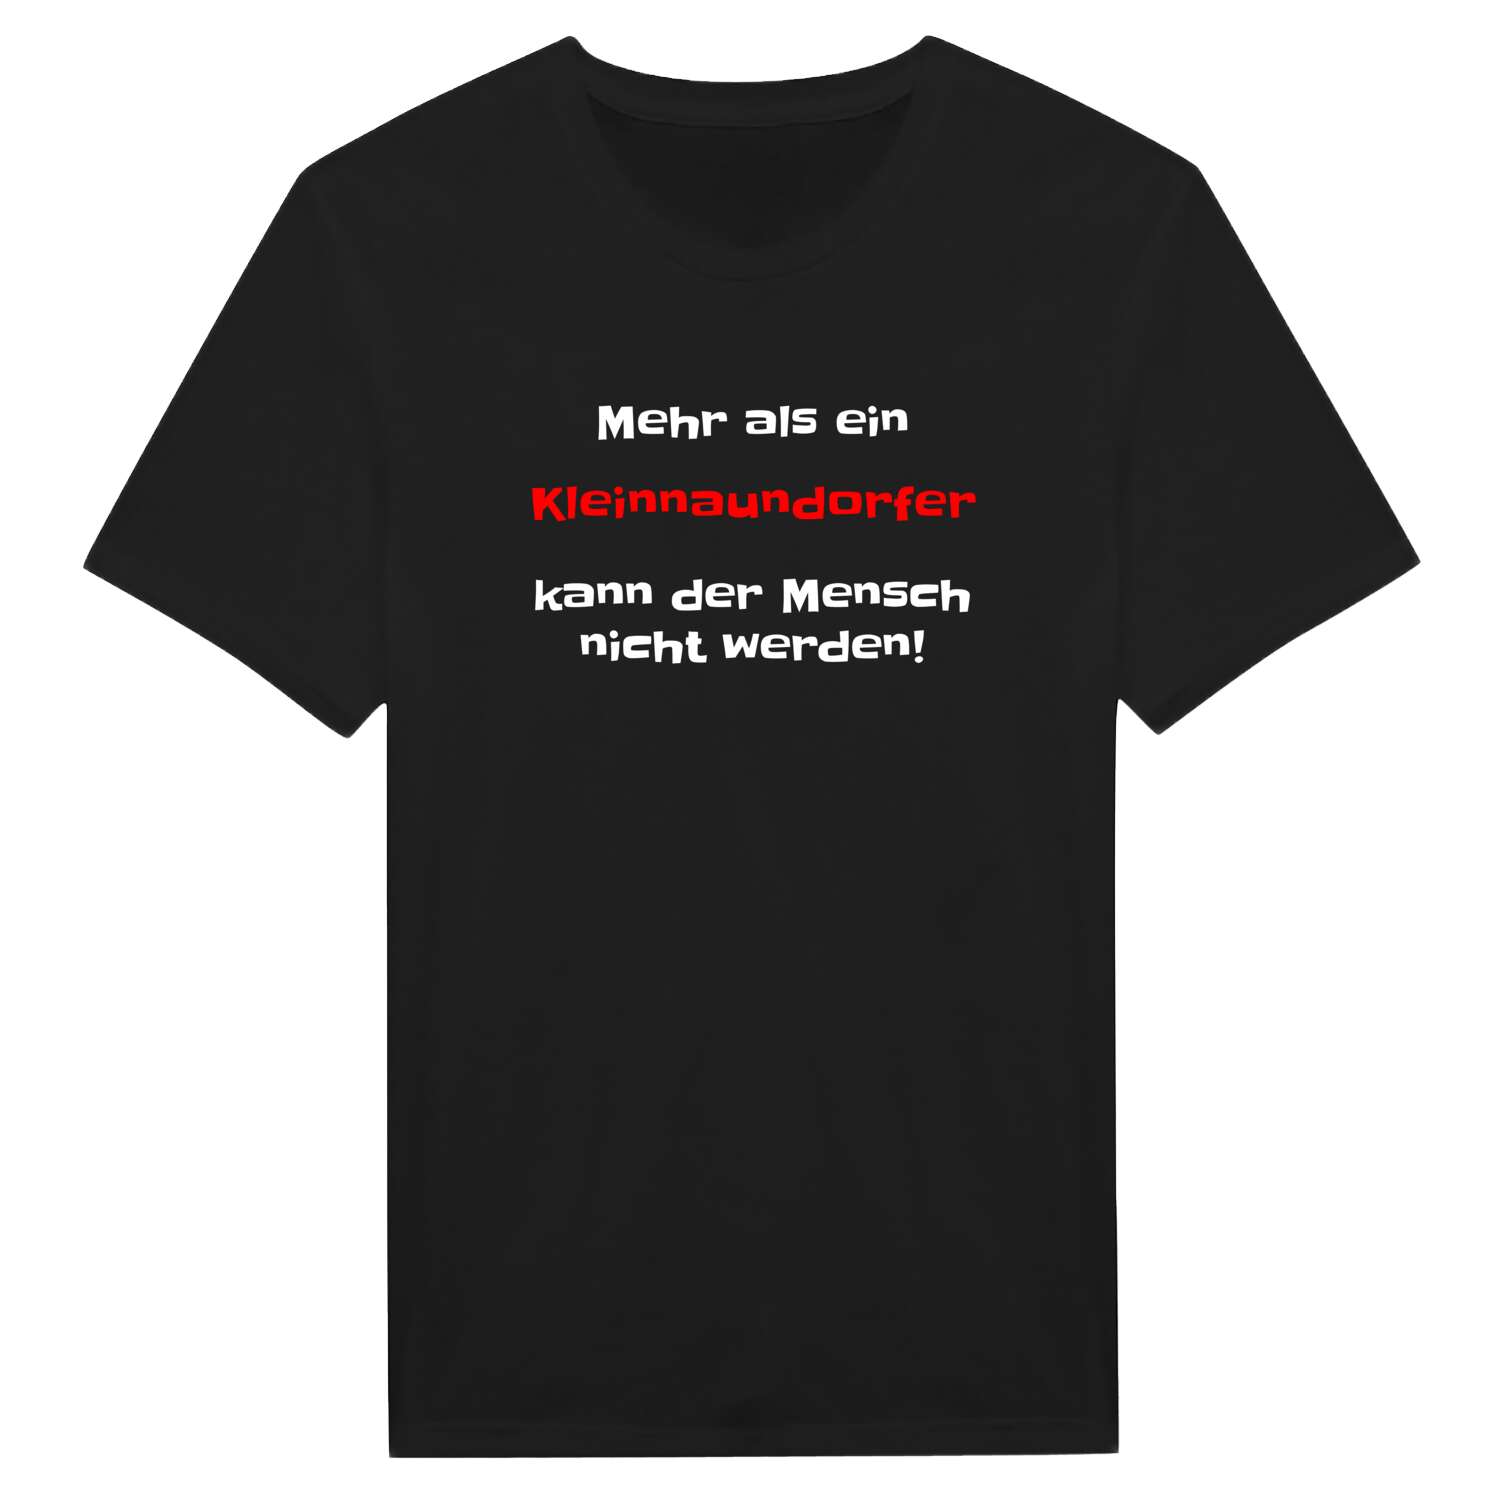 Kleinnaundorf T-Shirt »Mehr als ein«